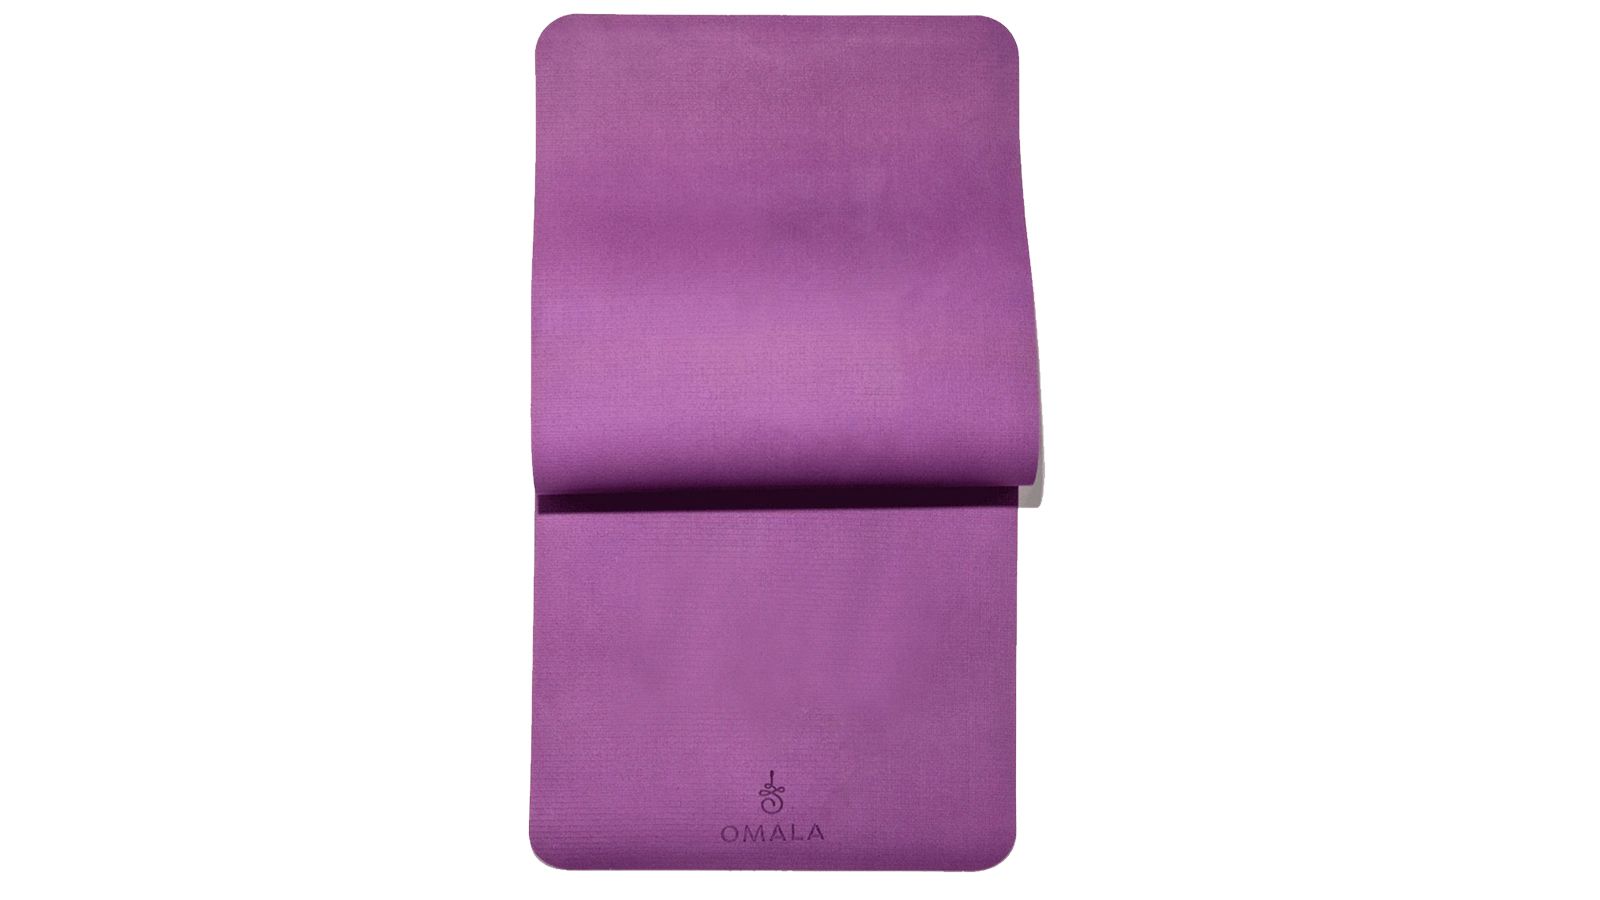 Buy Gaiam Yoga Mat Bag Slate Camo at